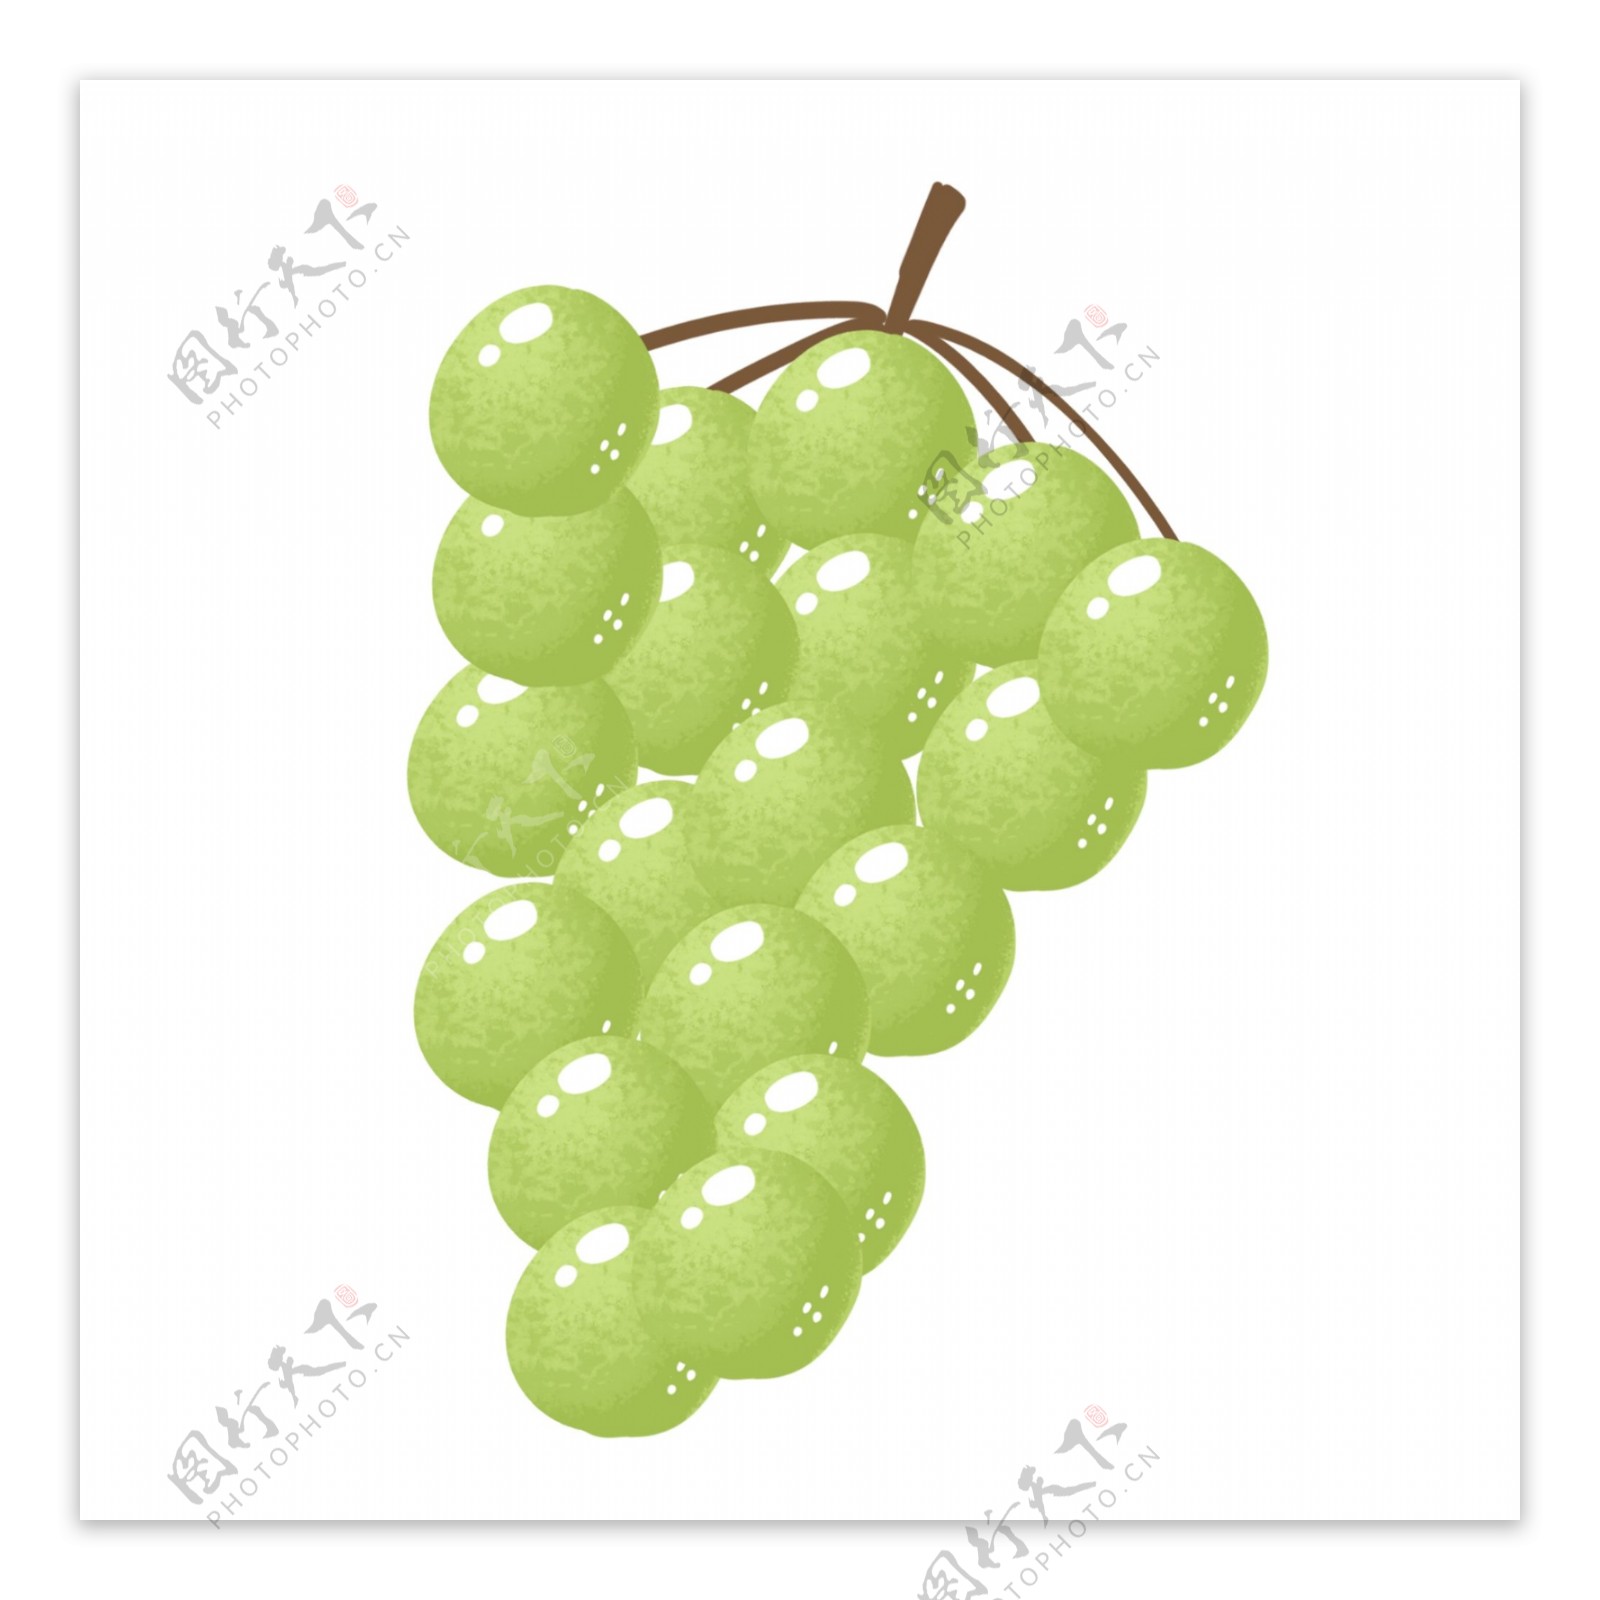 淡绿色可爱甜蜜夏季小清新葡萄